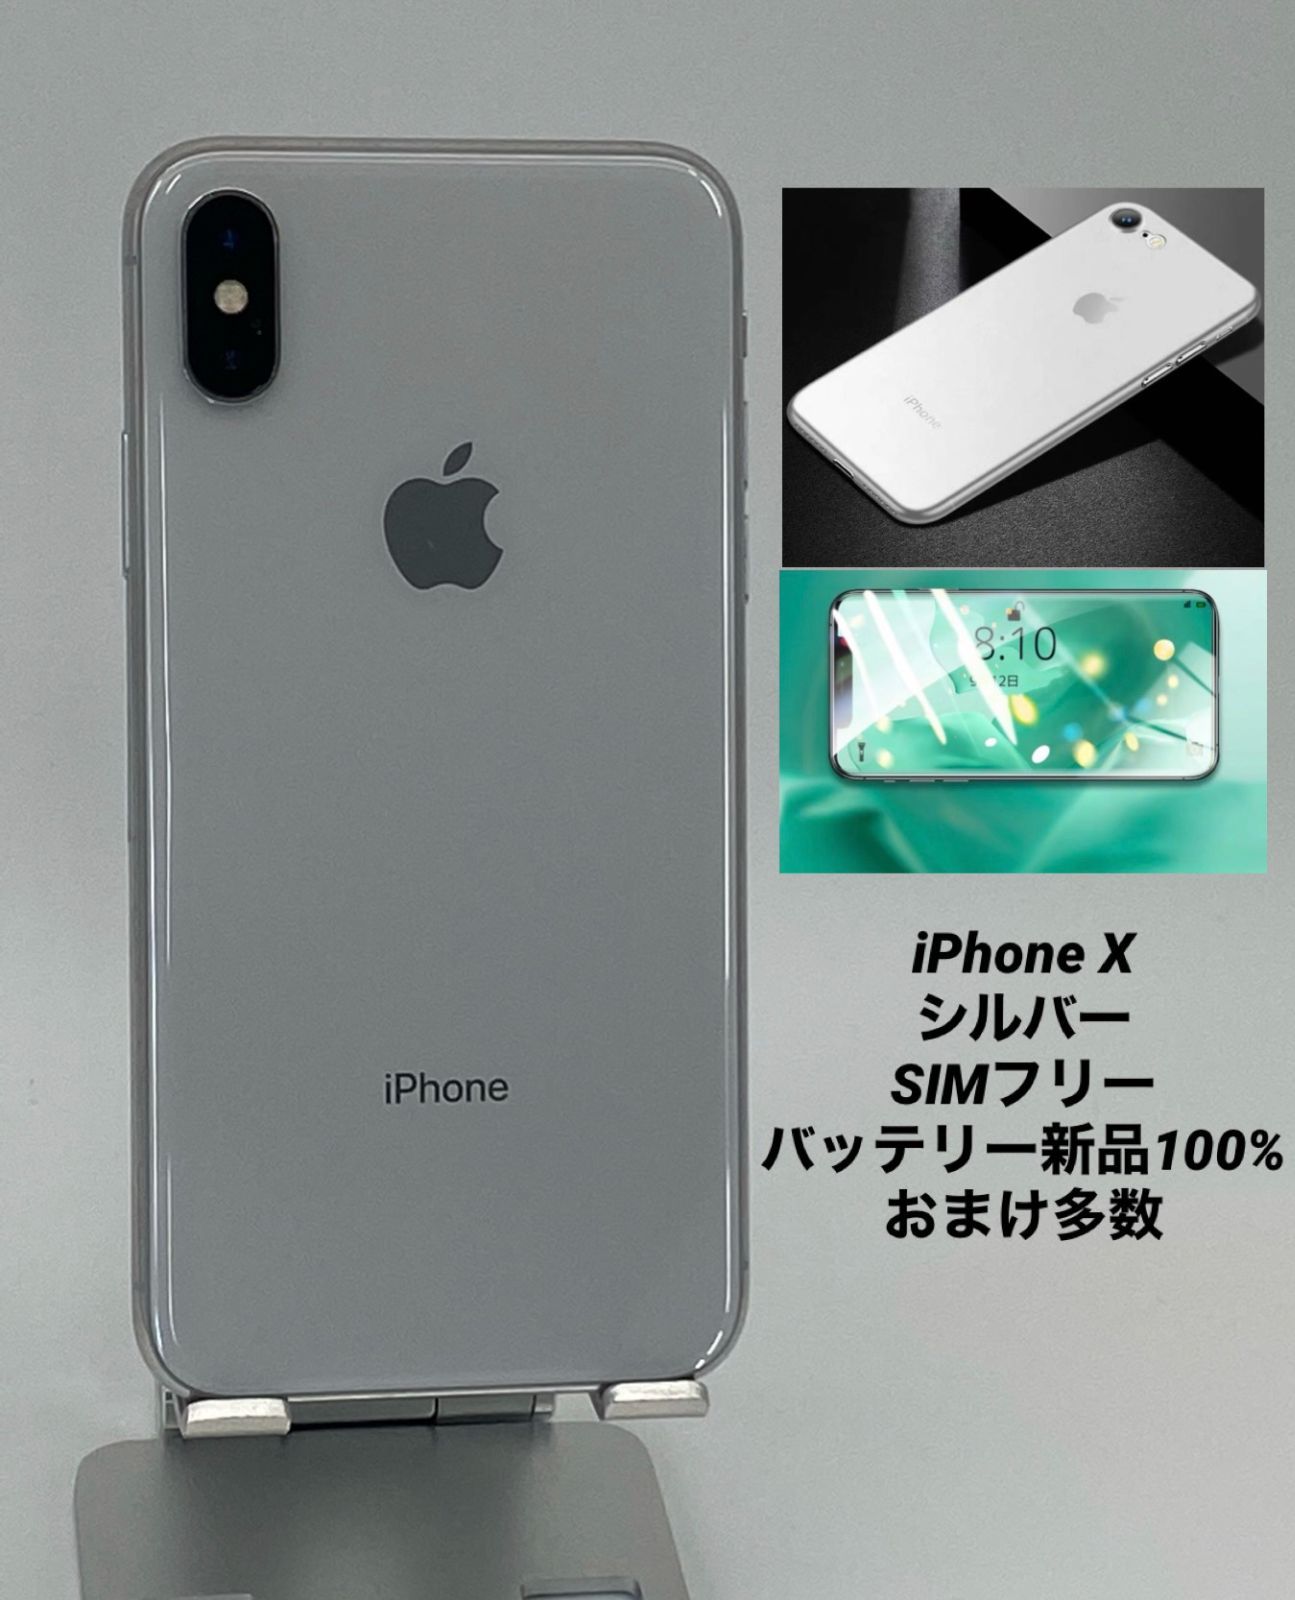 【入荷商品】iPhone X Silver 256 GB au SIMフリー スマートフォン本体